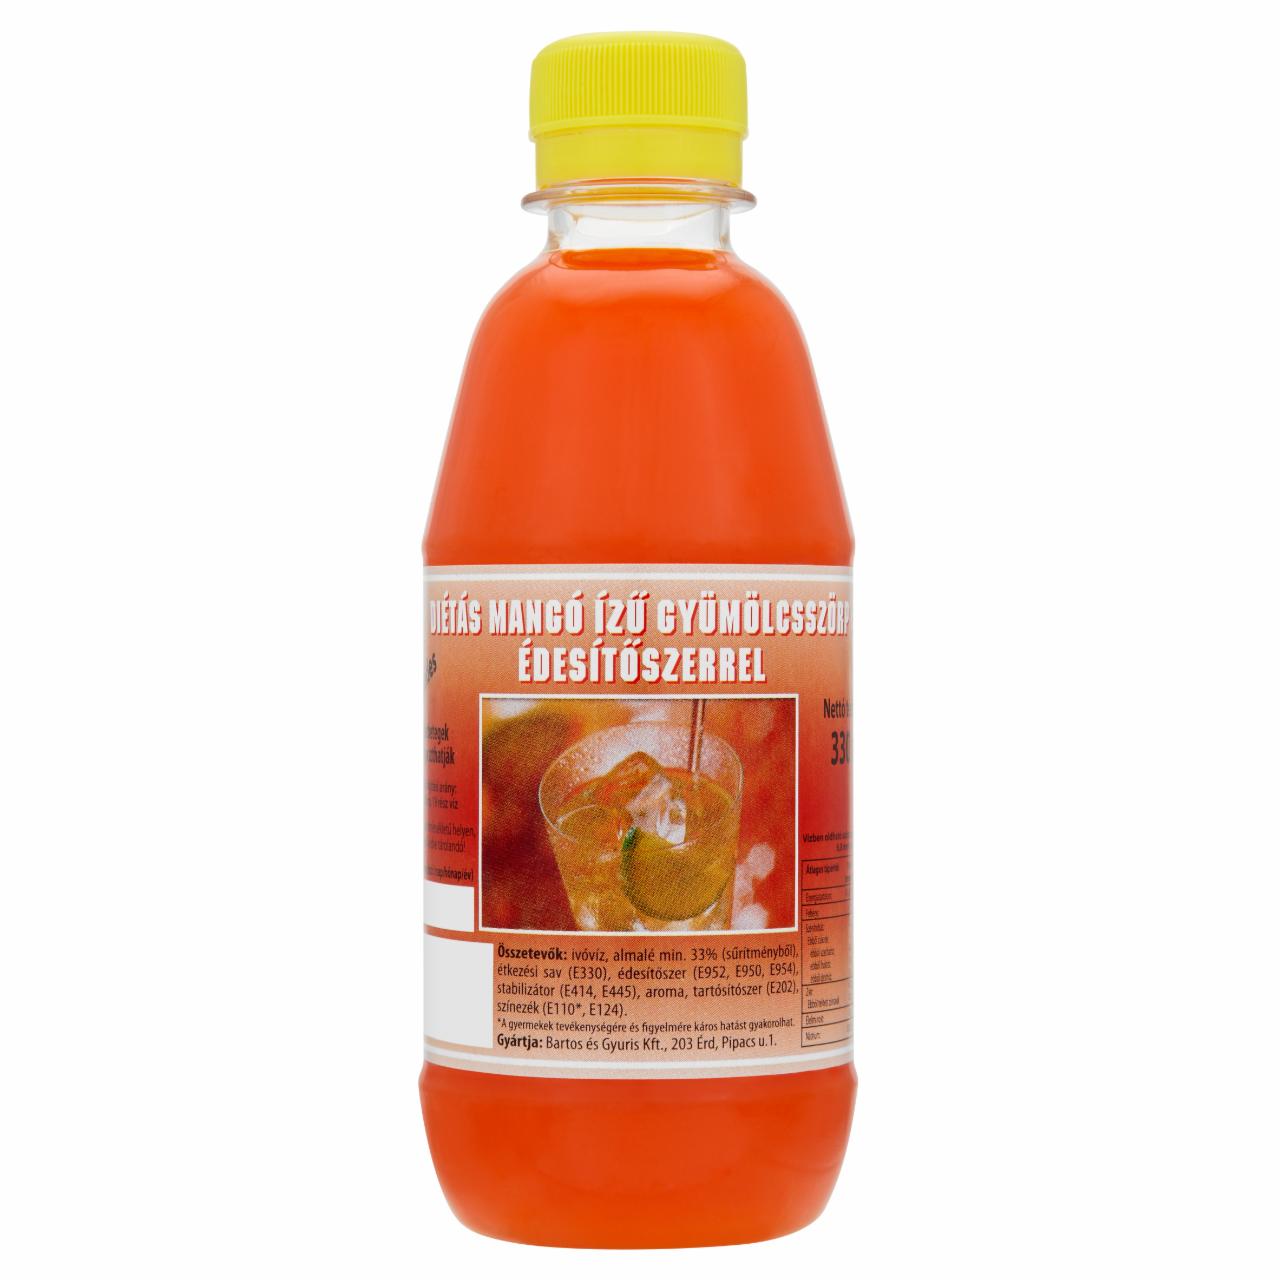 Képek - Ezerédes mangóízű gyümölcsszörp édesítőszerrel 330 ml